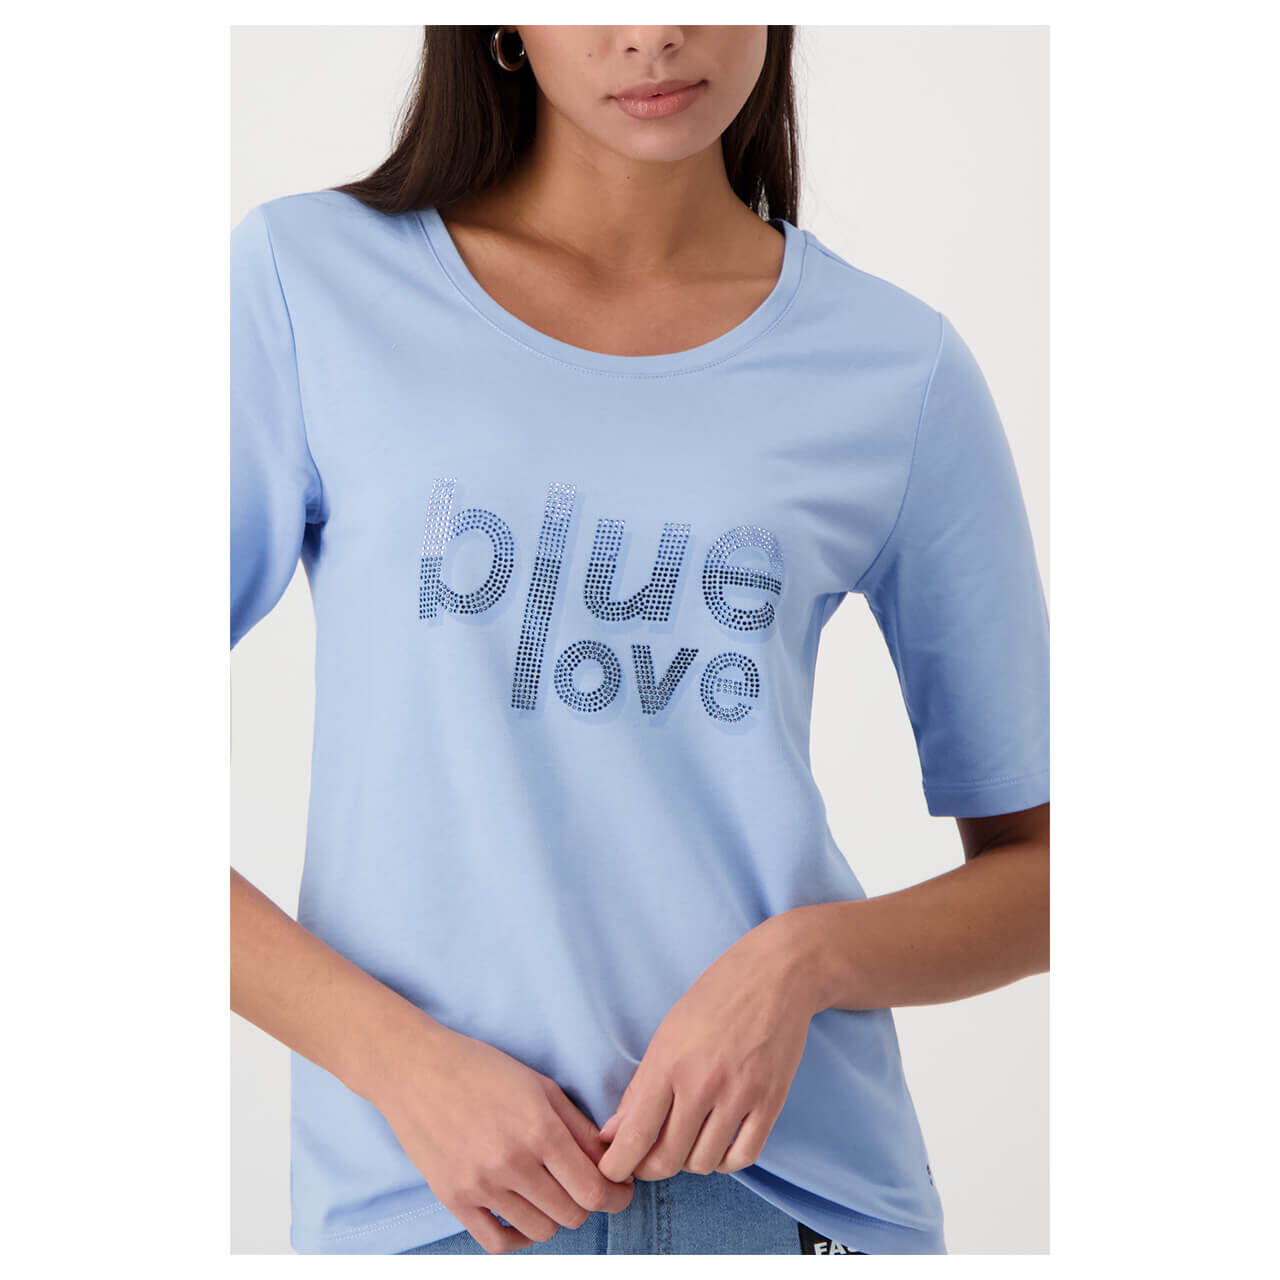 Monari Damen T-Shirt light blue glitter